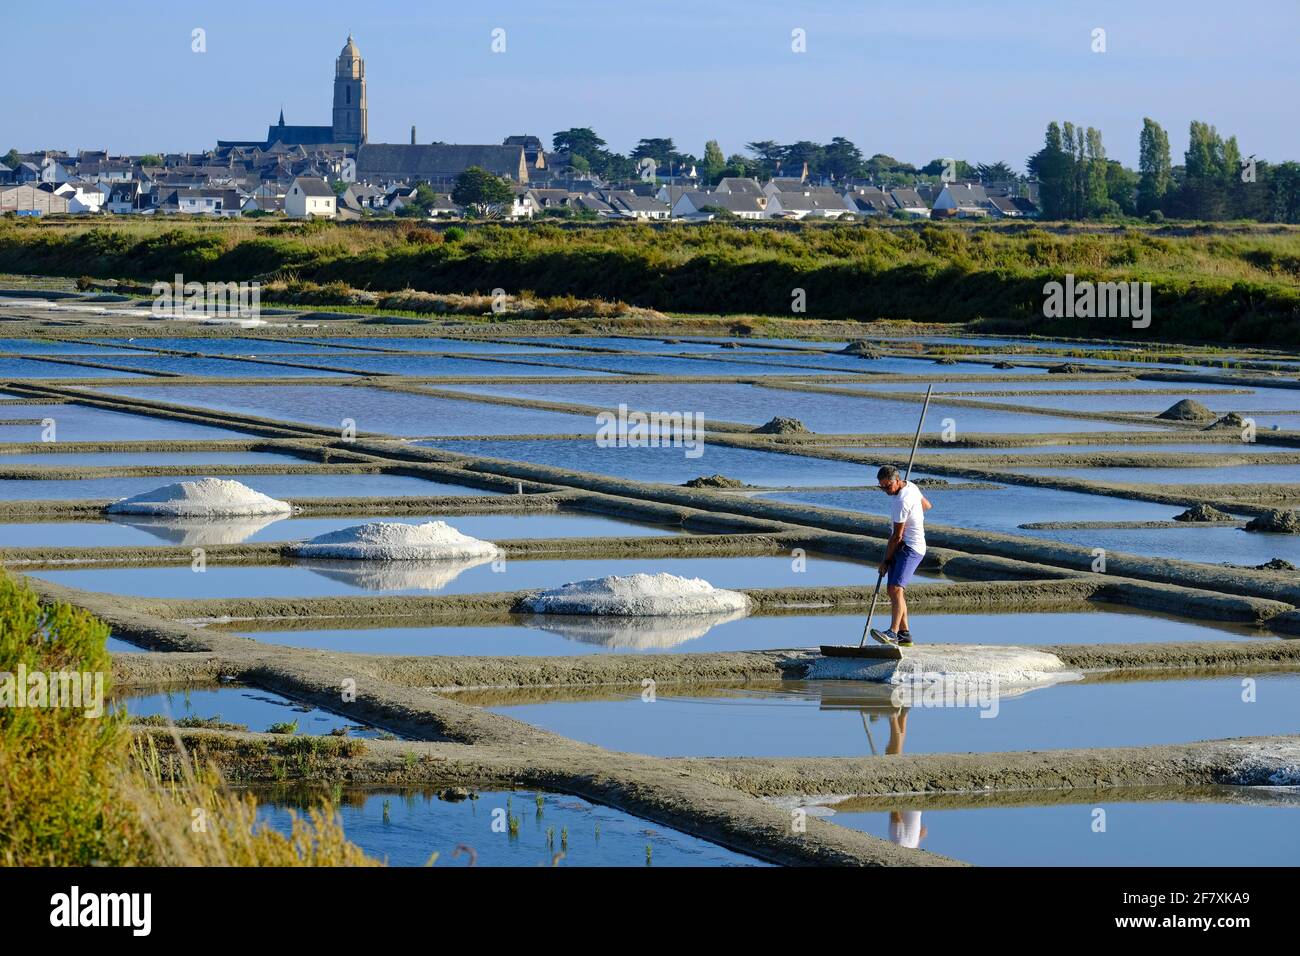 Frankreich, Batz-sur-Mer, 15.07.2019: Salzproduzent bei der Arbeit im Marais Salants bei Batz-sur-Mer, wo Salz aus Meerwasser durch Verdunstung gewonn Stock Photo